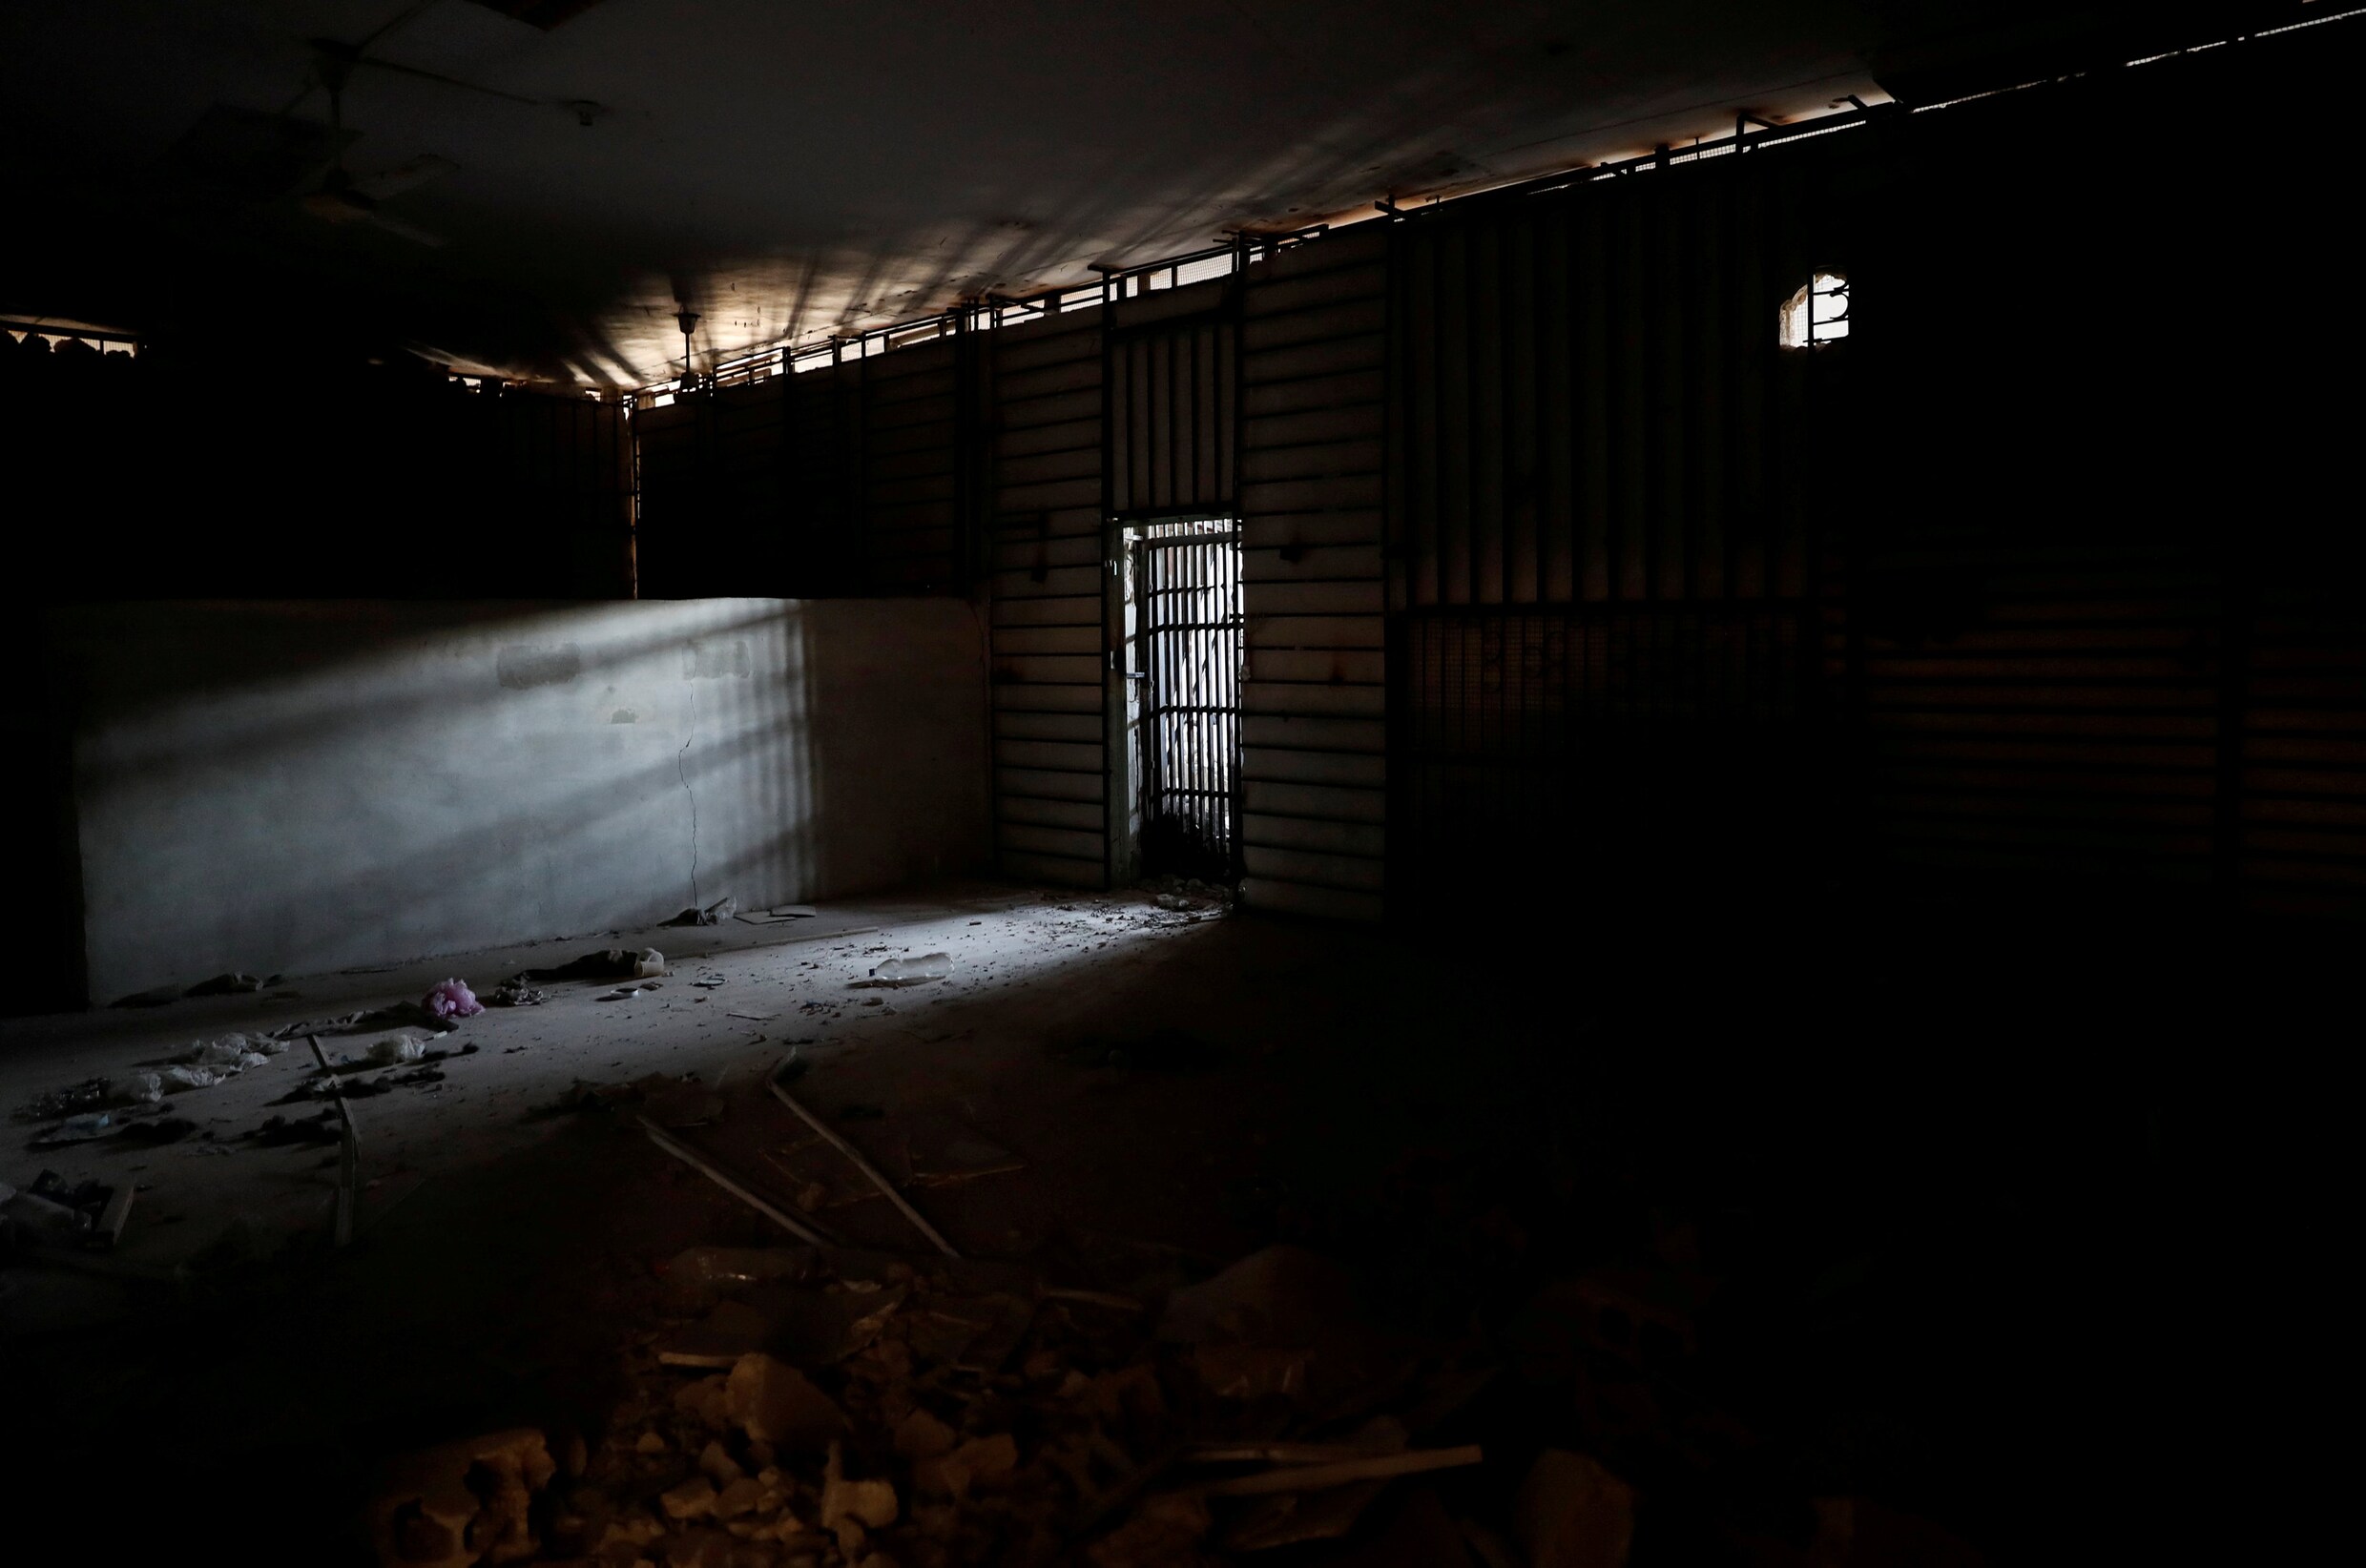 Binnenkijken in de cellen van IS-gevangenis in Raqqa: "Nachtmerrie"